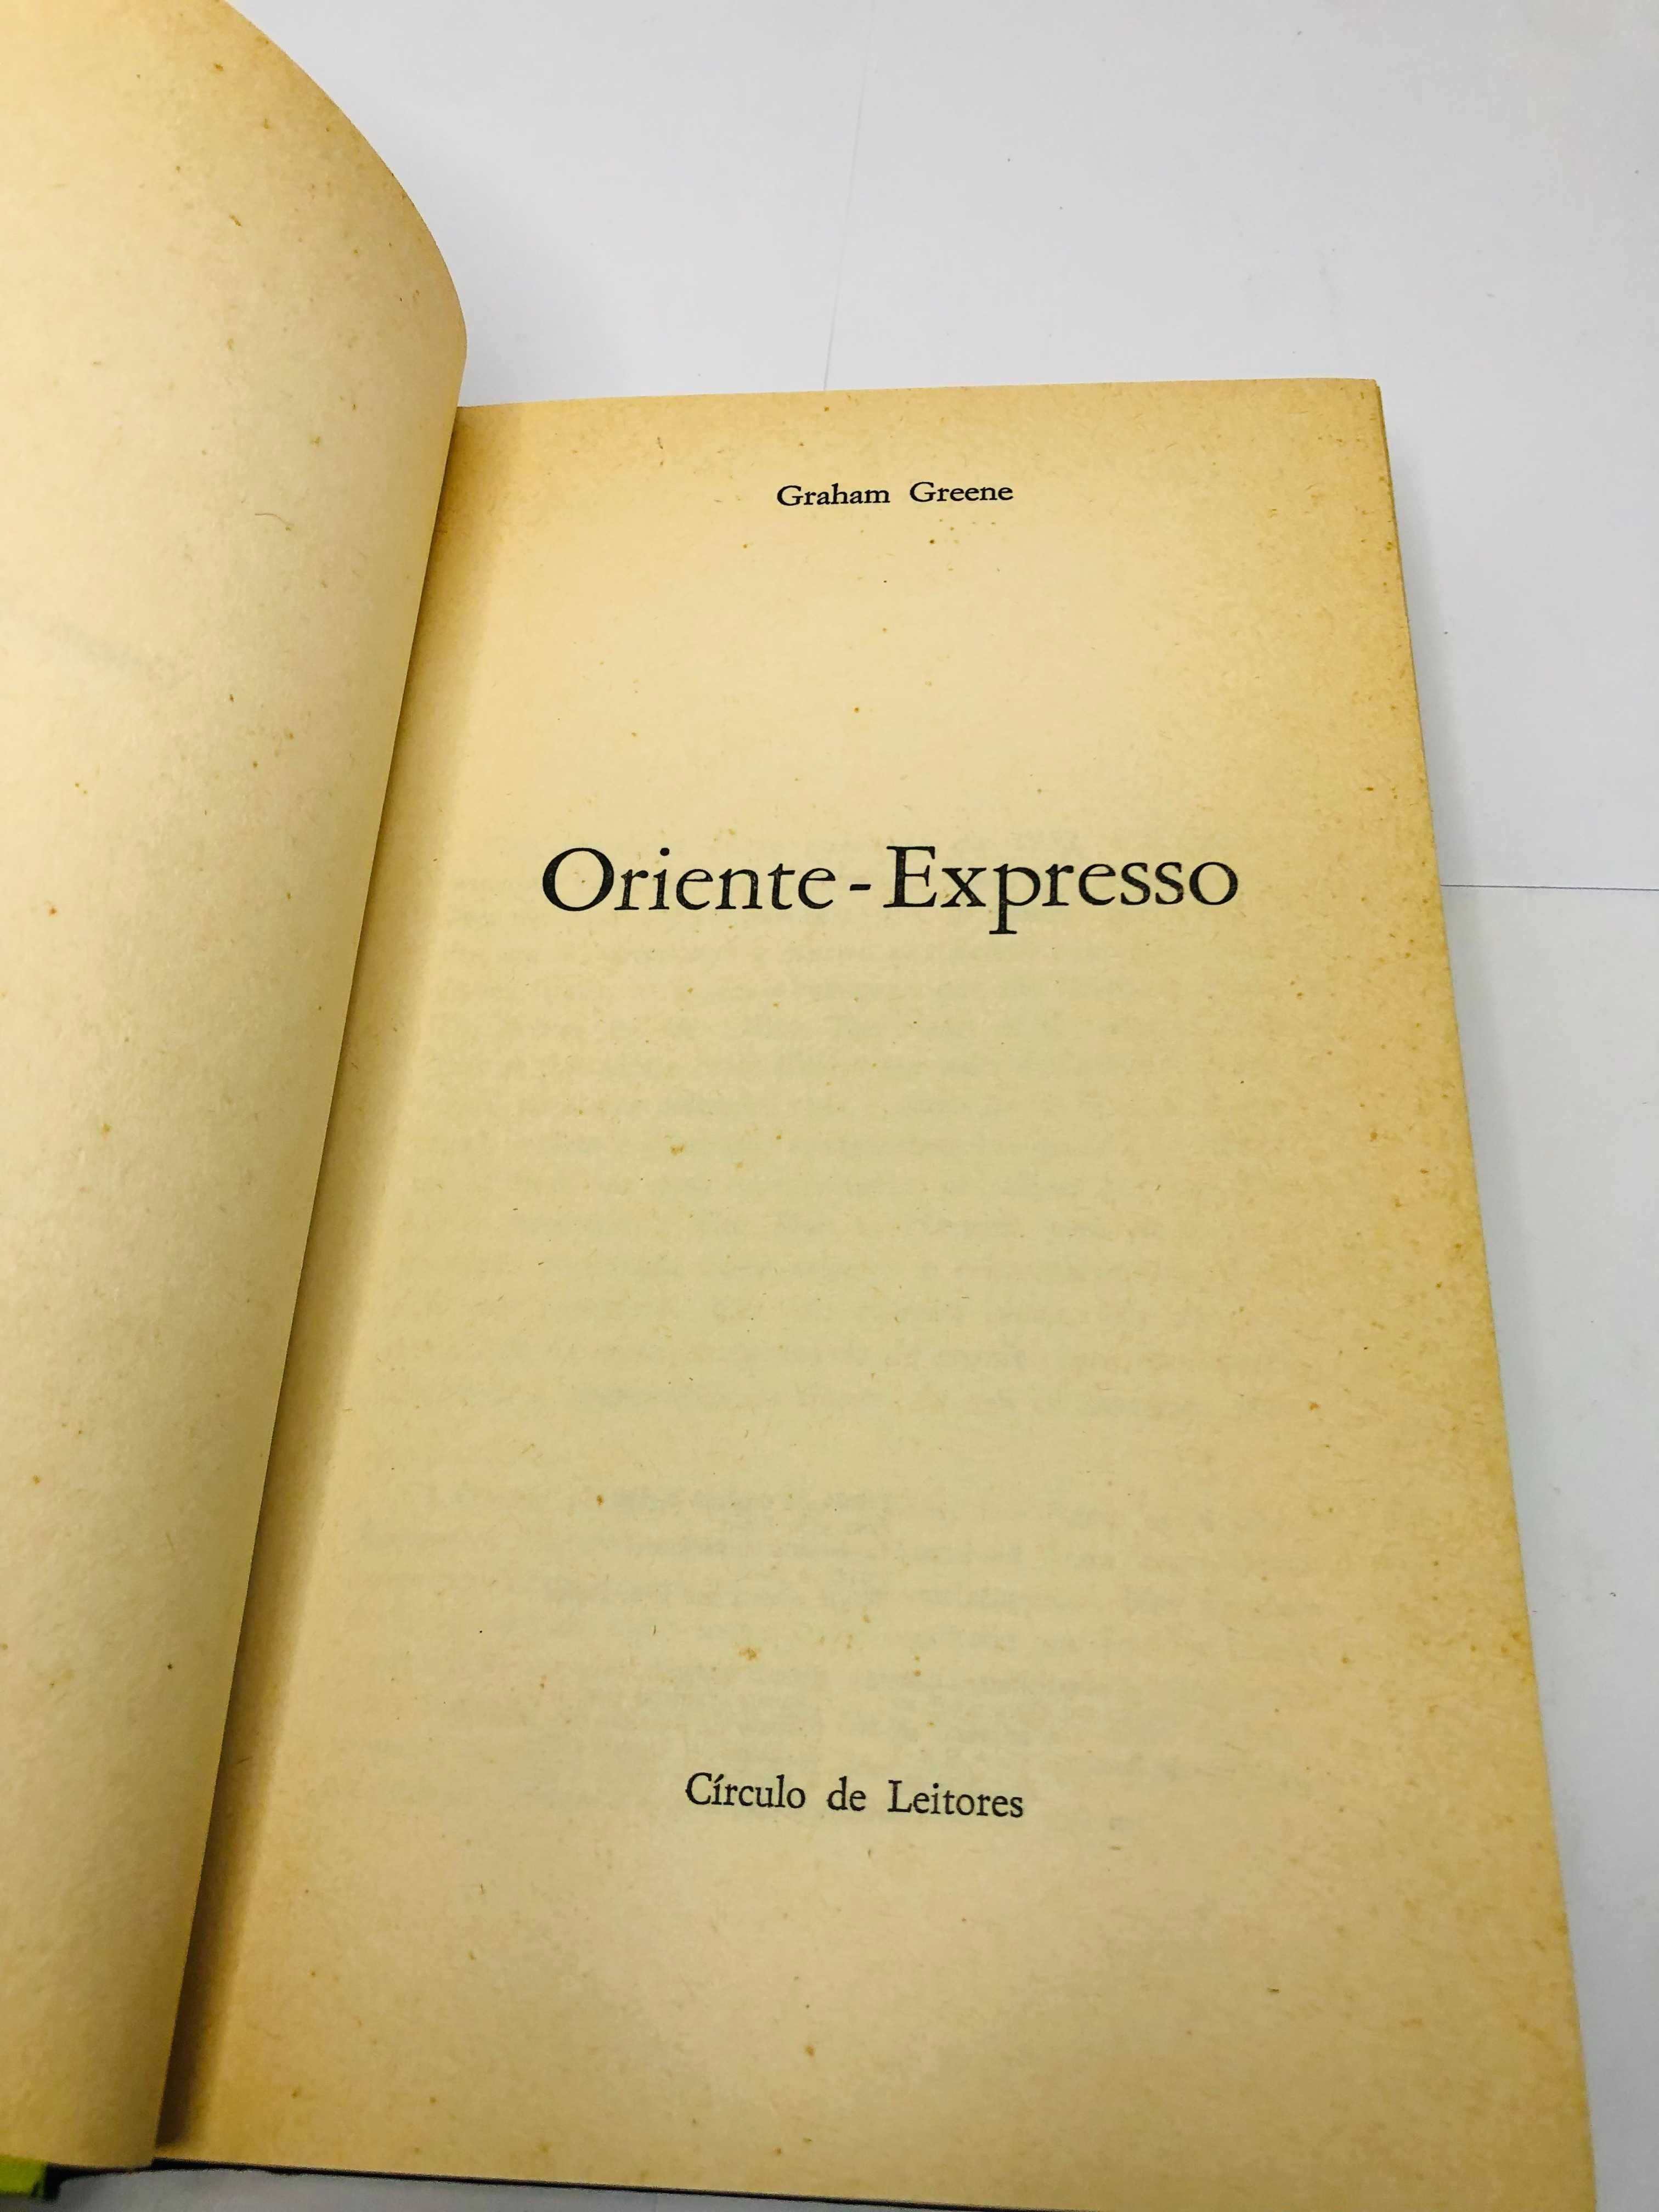 Oriente-Expresso de Graham Greene